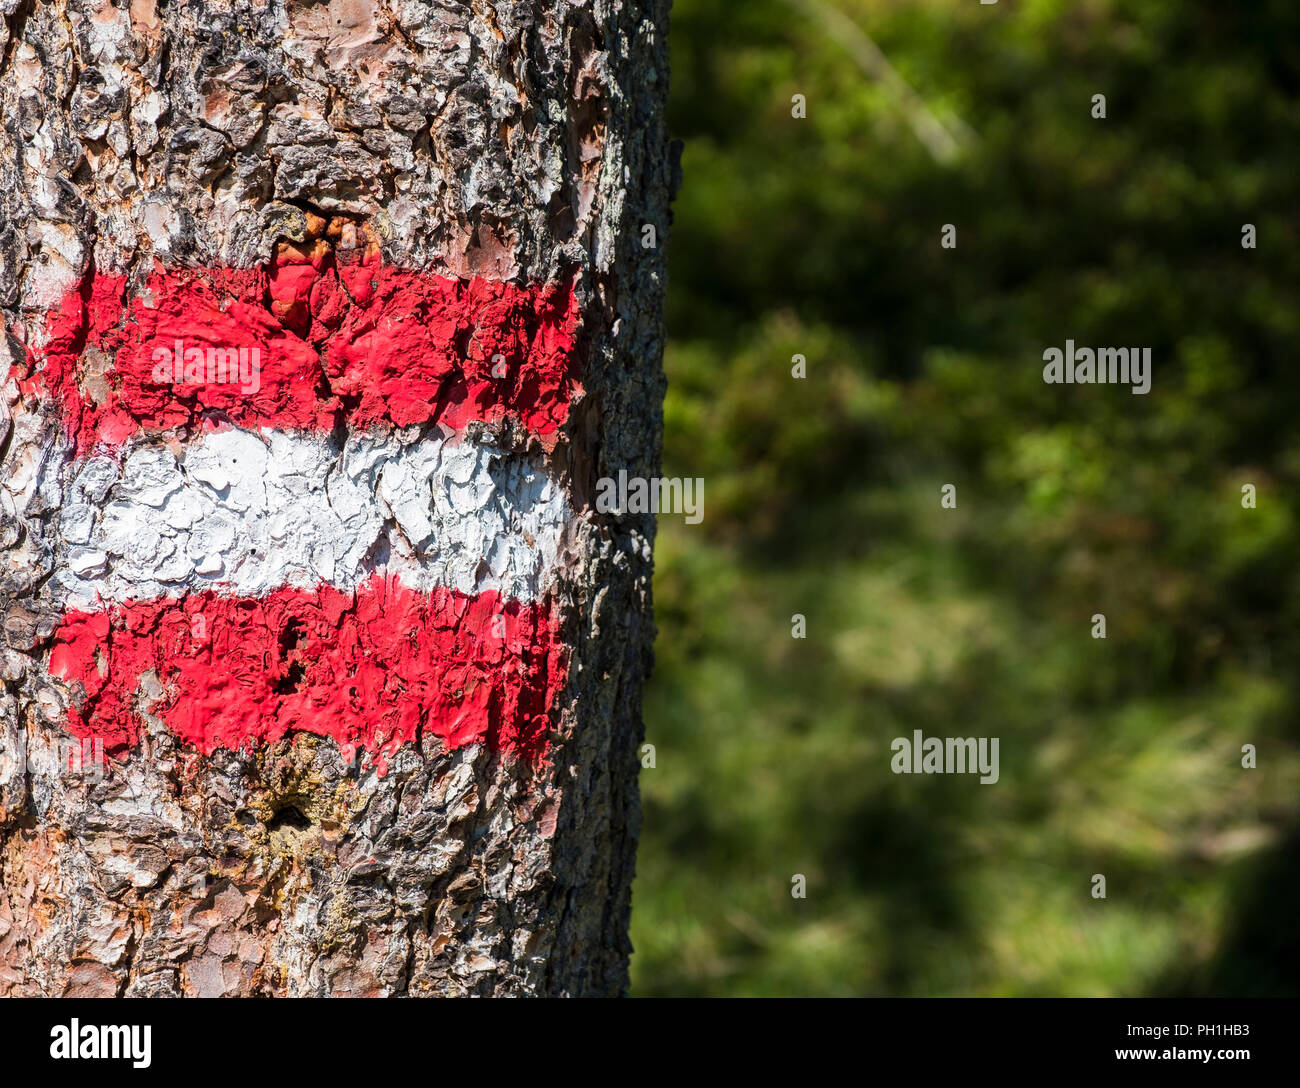 Austrian hiking blaze or trail marker, Austria, Europe Stock Photo - Alamy